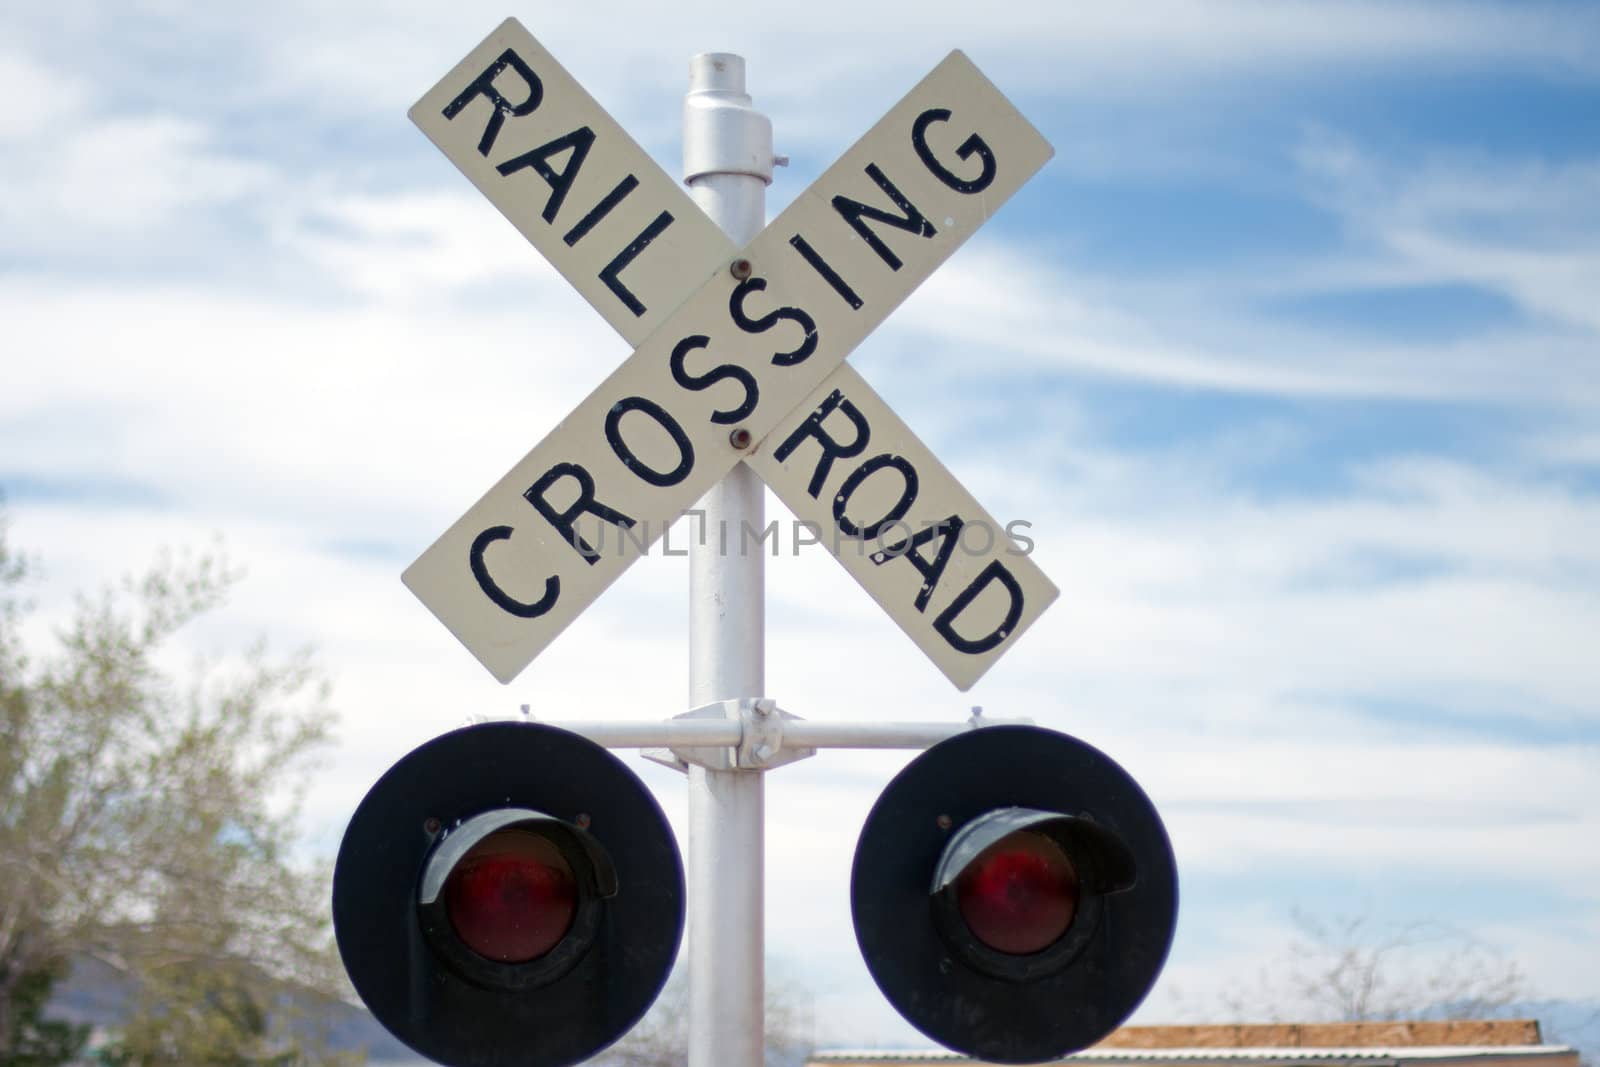 Railroad crossing sign by GunterNezhoda